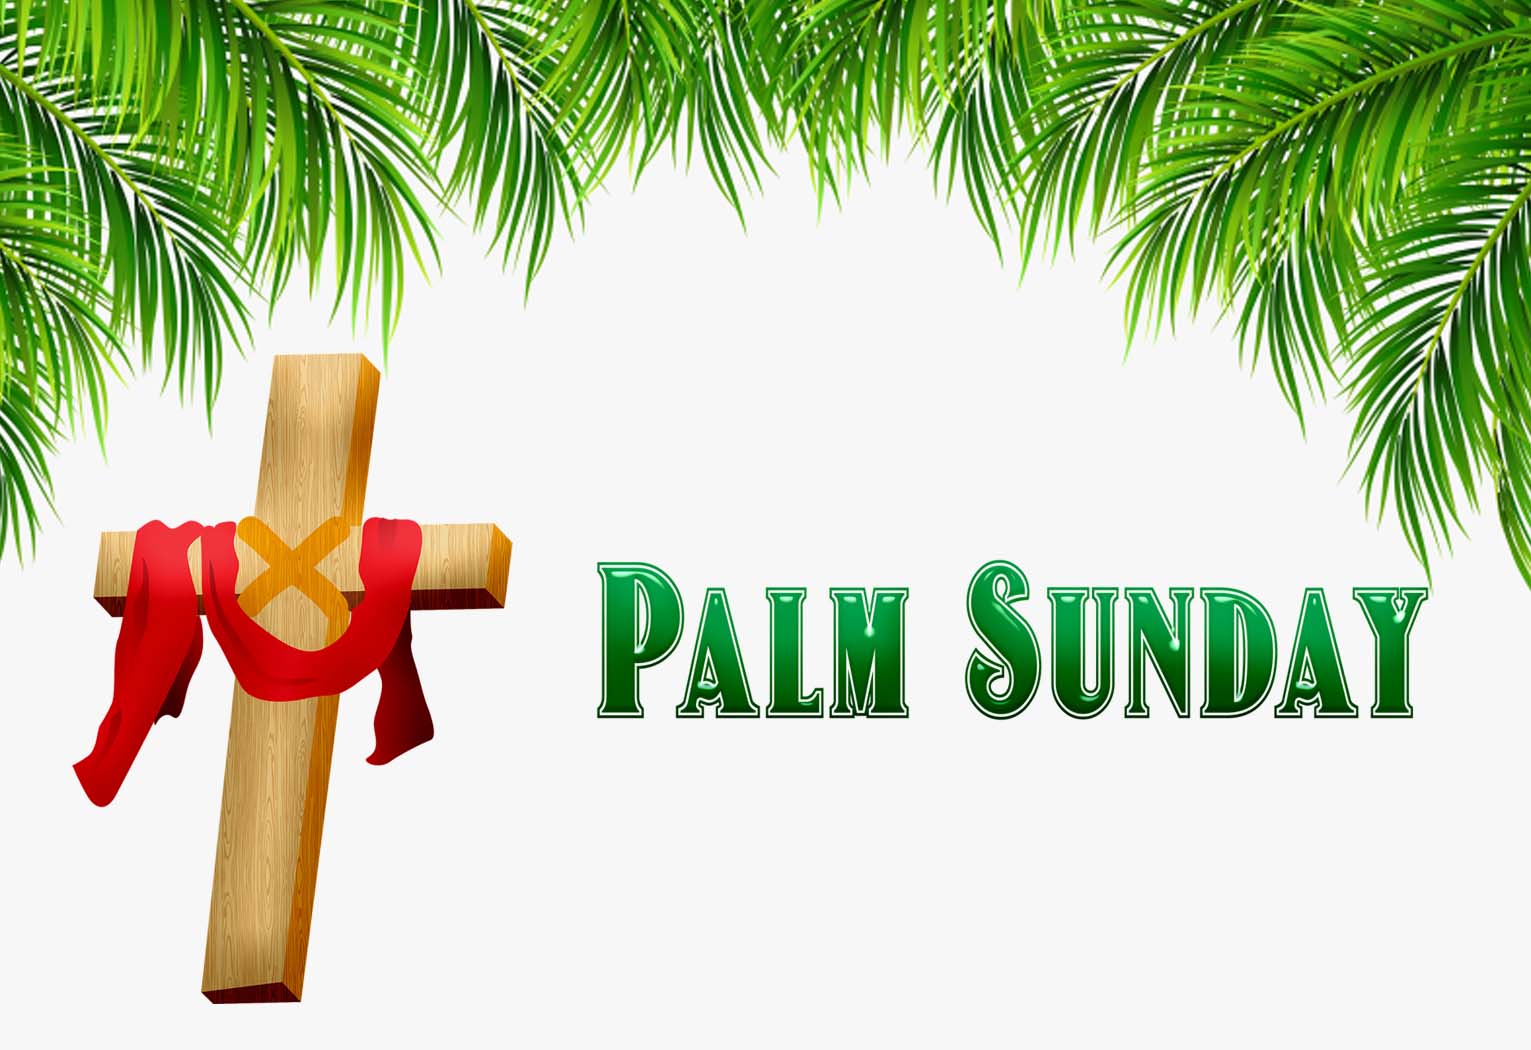 Palm Sunday Images